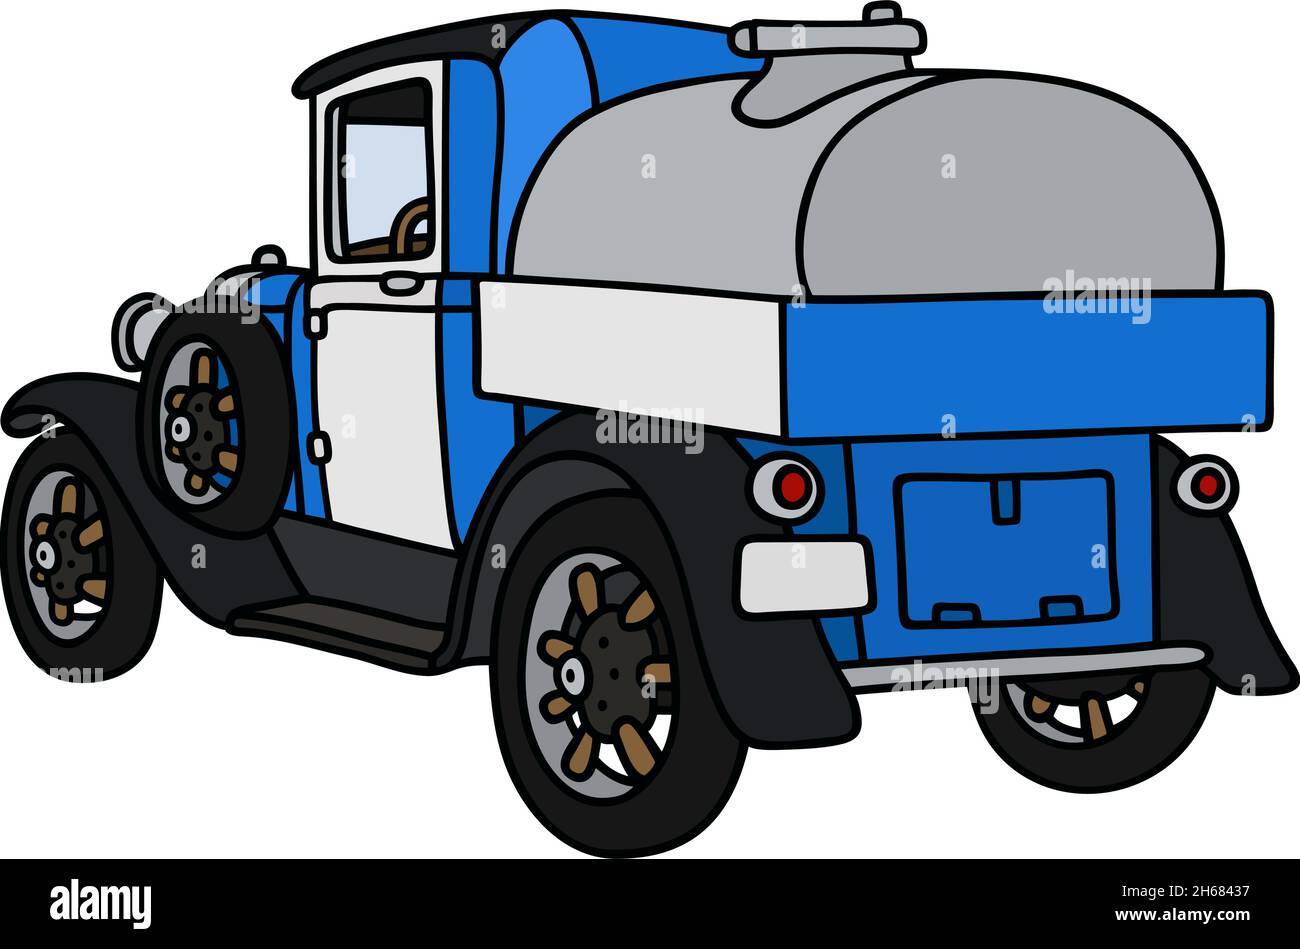 Il disegno a mano vettorizzato di un camion di latticini d'epoca Illustrazione Vettoriale